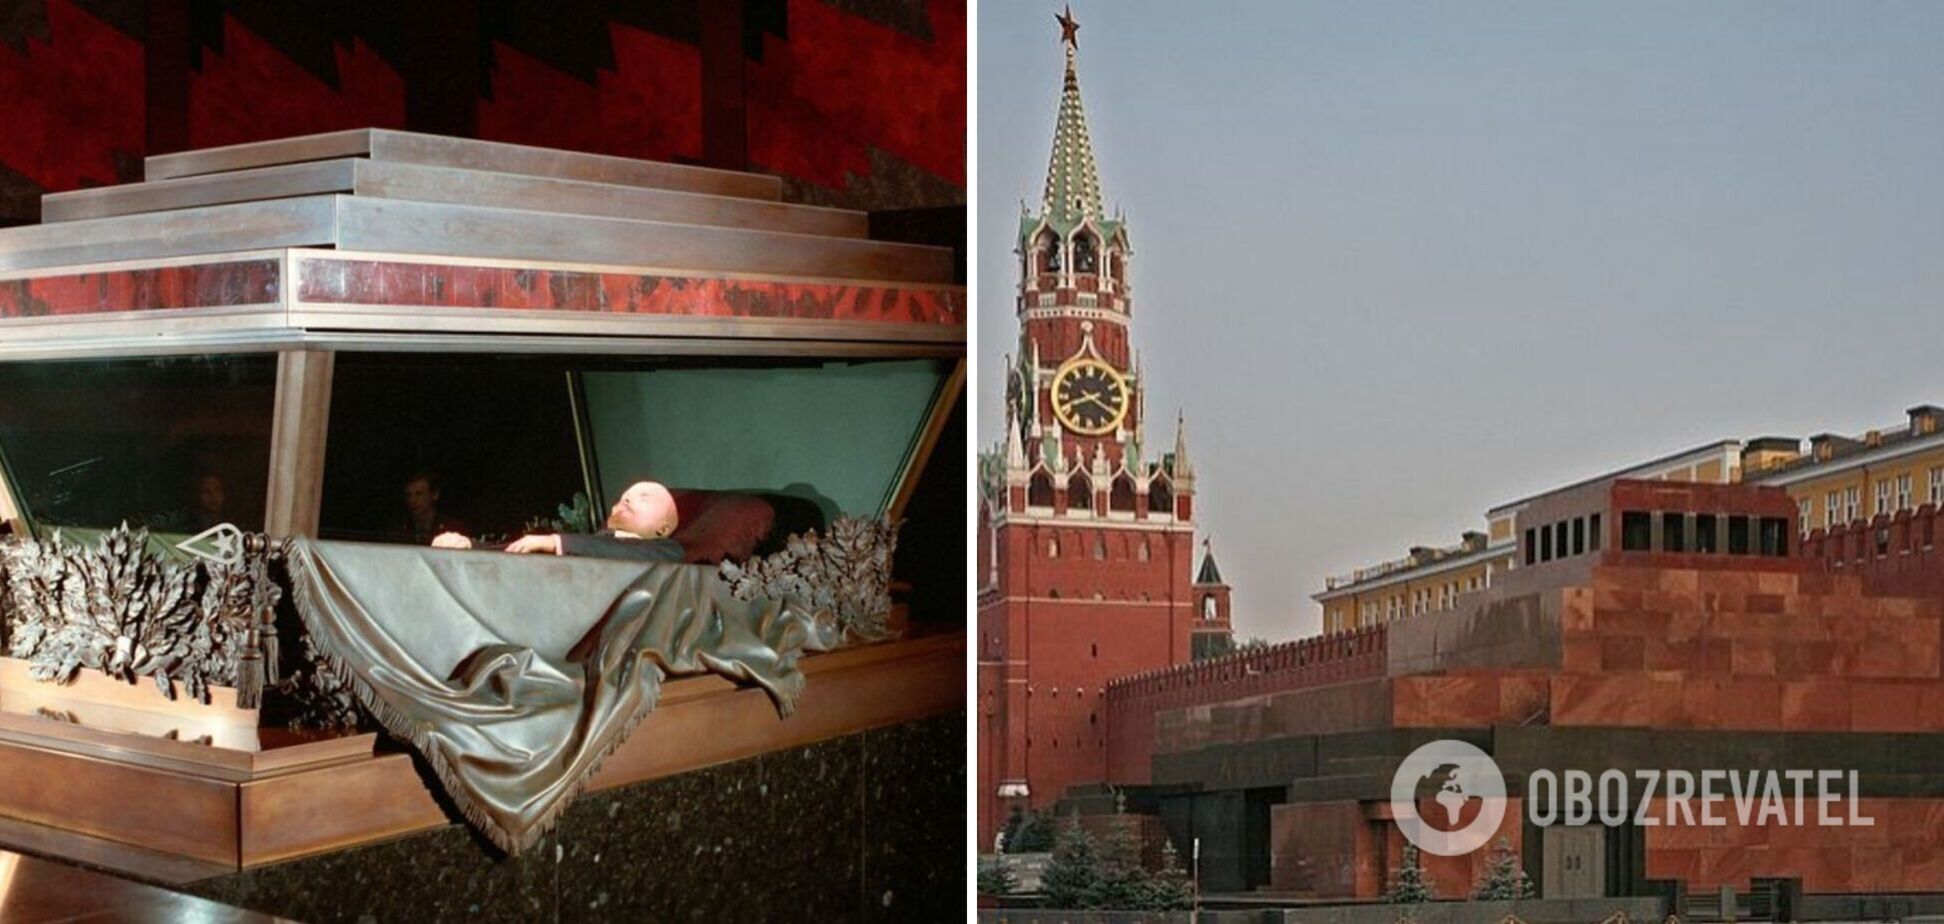 Ховали Леніна, тепер ховають Путіна: історія повторюється